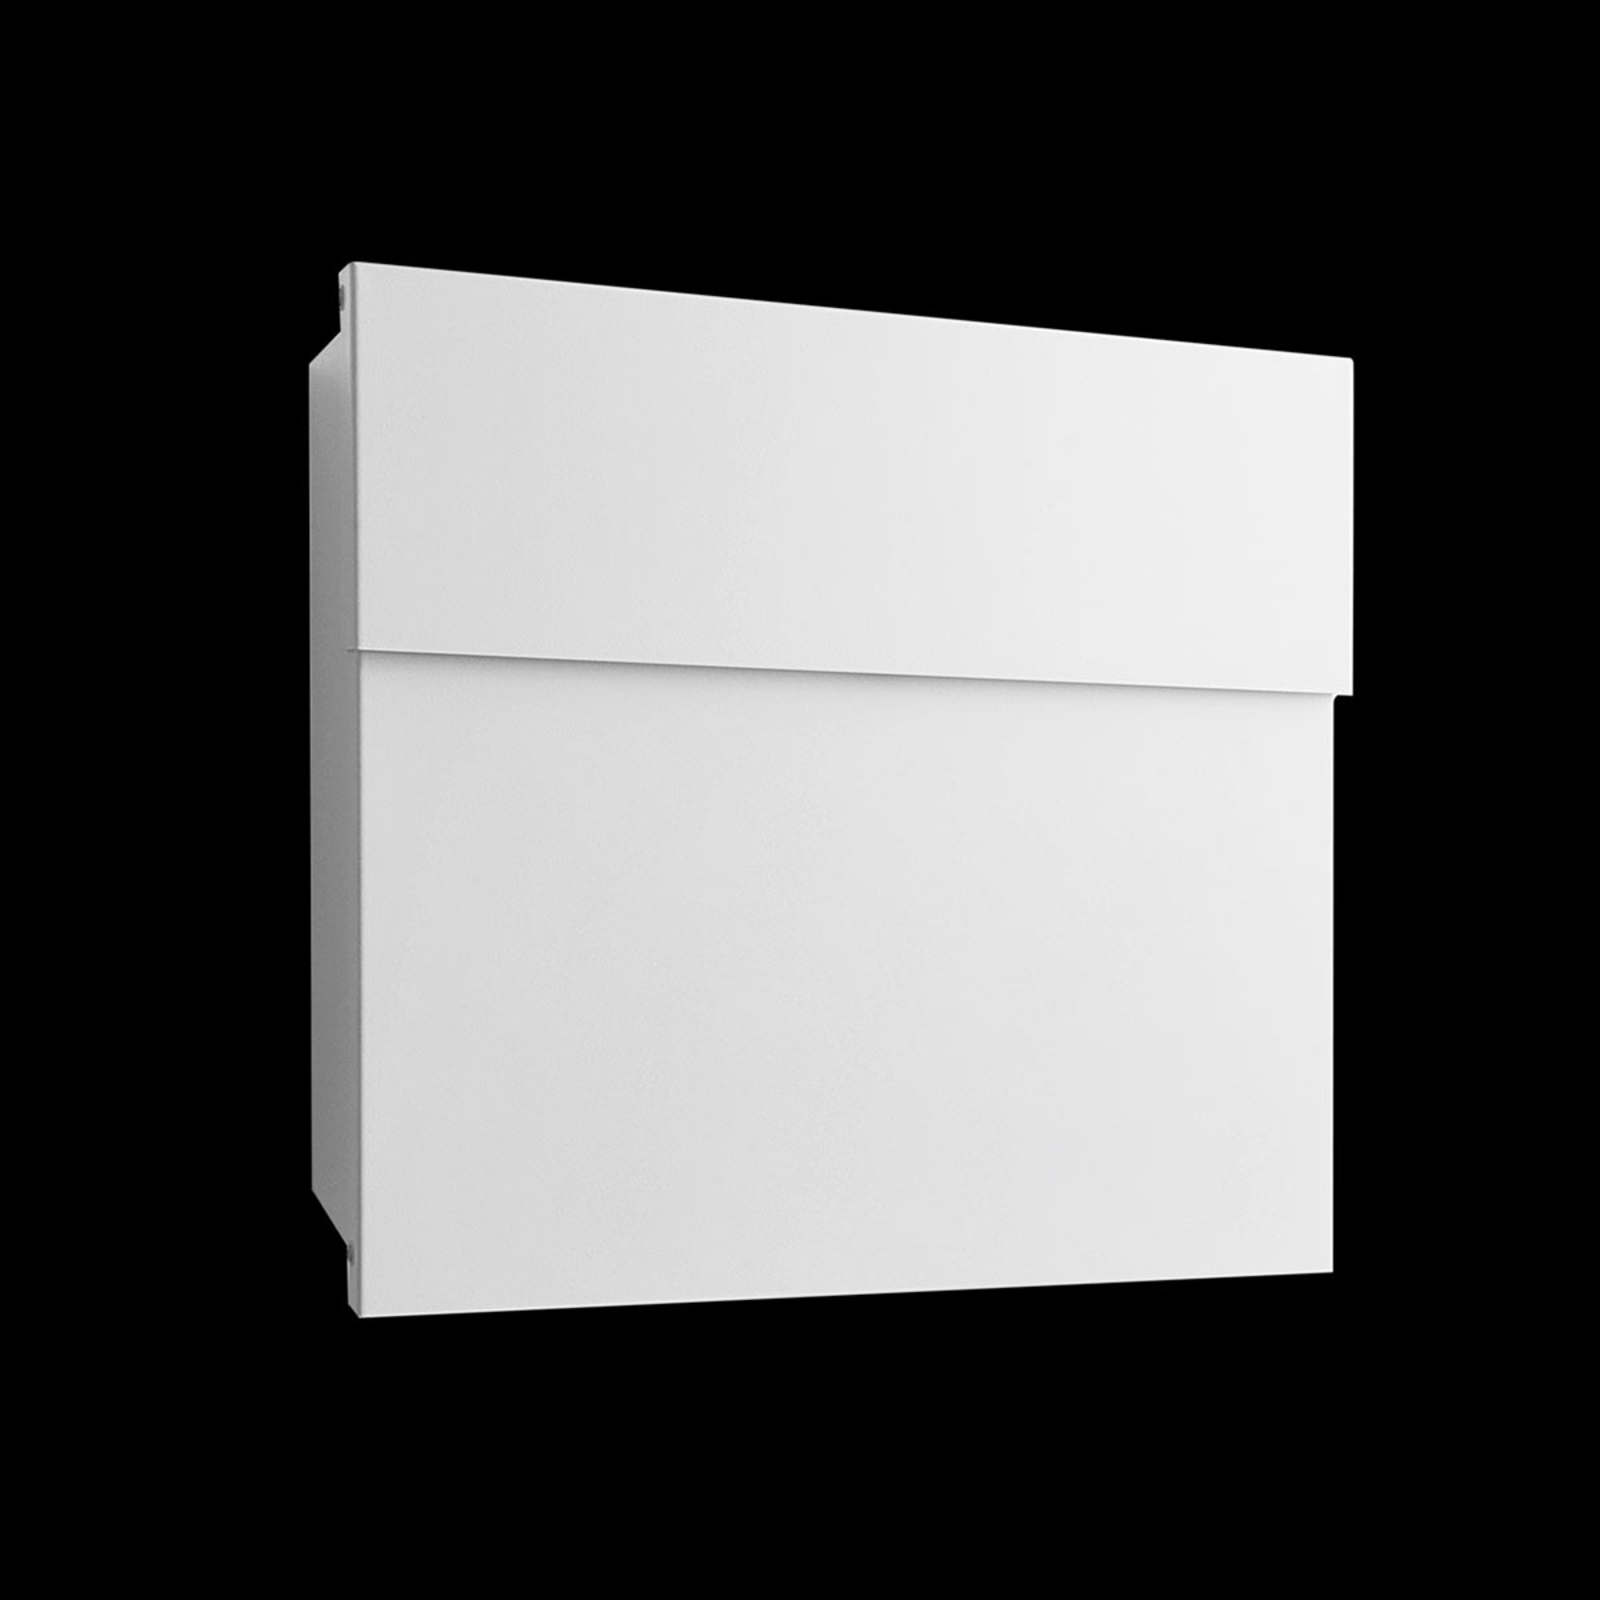 Letterman IV designer letterbox, white